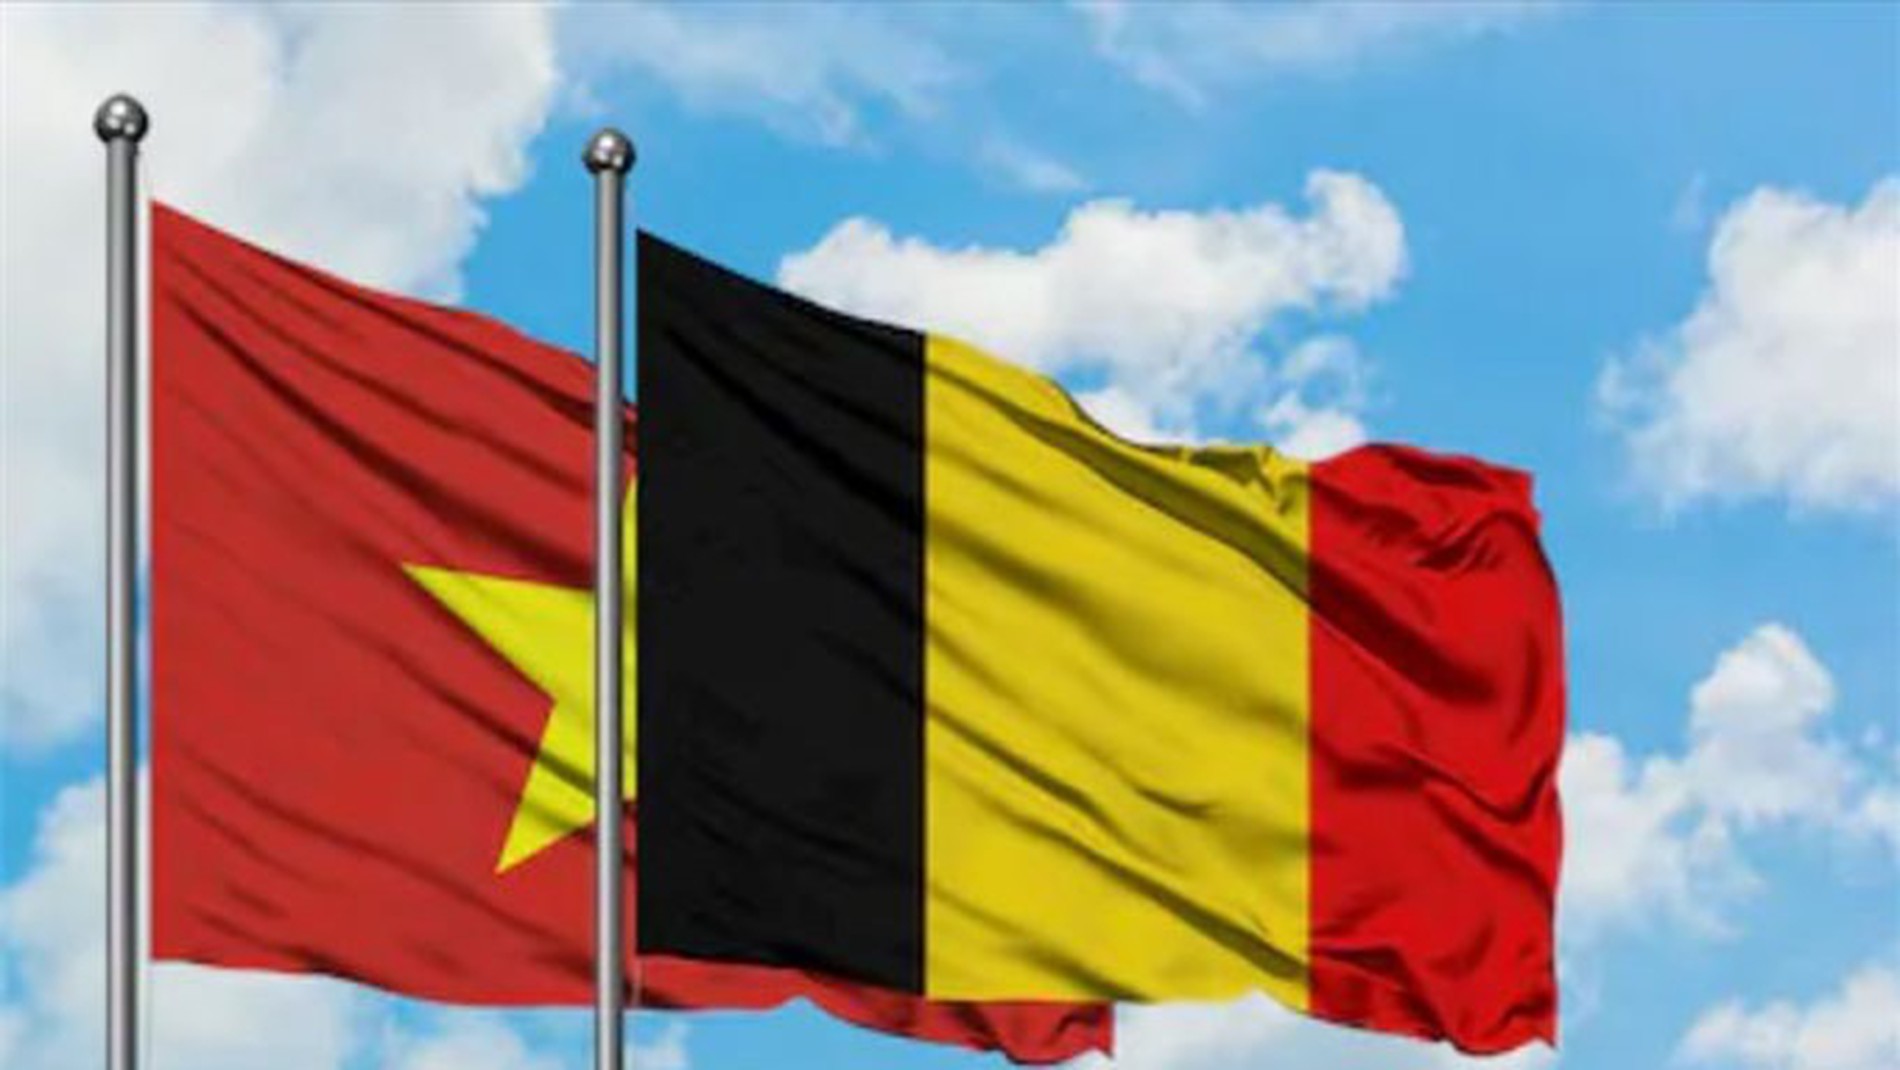 Mối quan hệ song phương Việt Nam - Bỉ đang phát triển mạnh mẽ và tiềm năng. Hai nước đã có nhiều chuyến thăm chính thức và ký kết nhiều thỏa thuận hợp tác. Đây là cơ hội để mở rộng hợp tác và tăng cường quan hệ giữa các doanh nghiệp hai nước. Hãy xem bức ảnh liên quan để tìm hiểu thêm về những thành tựu trong mối quan hệ này.